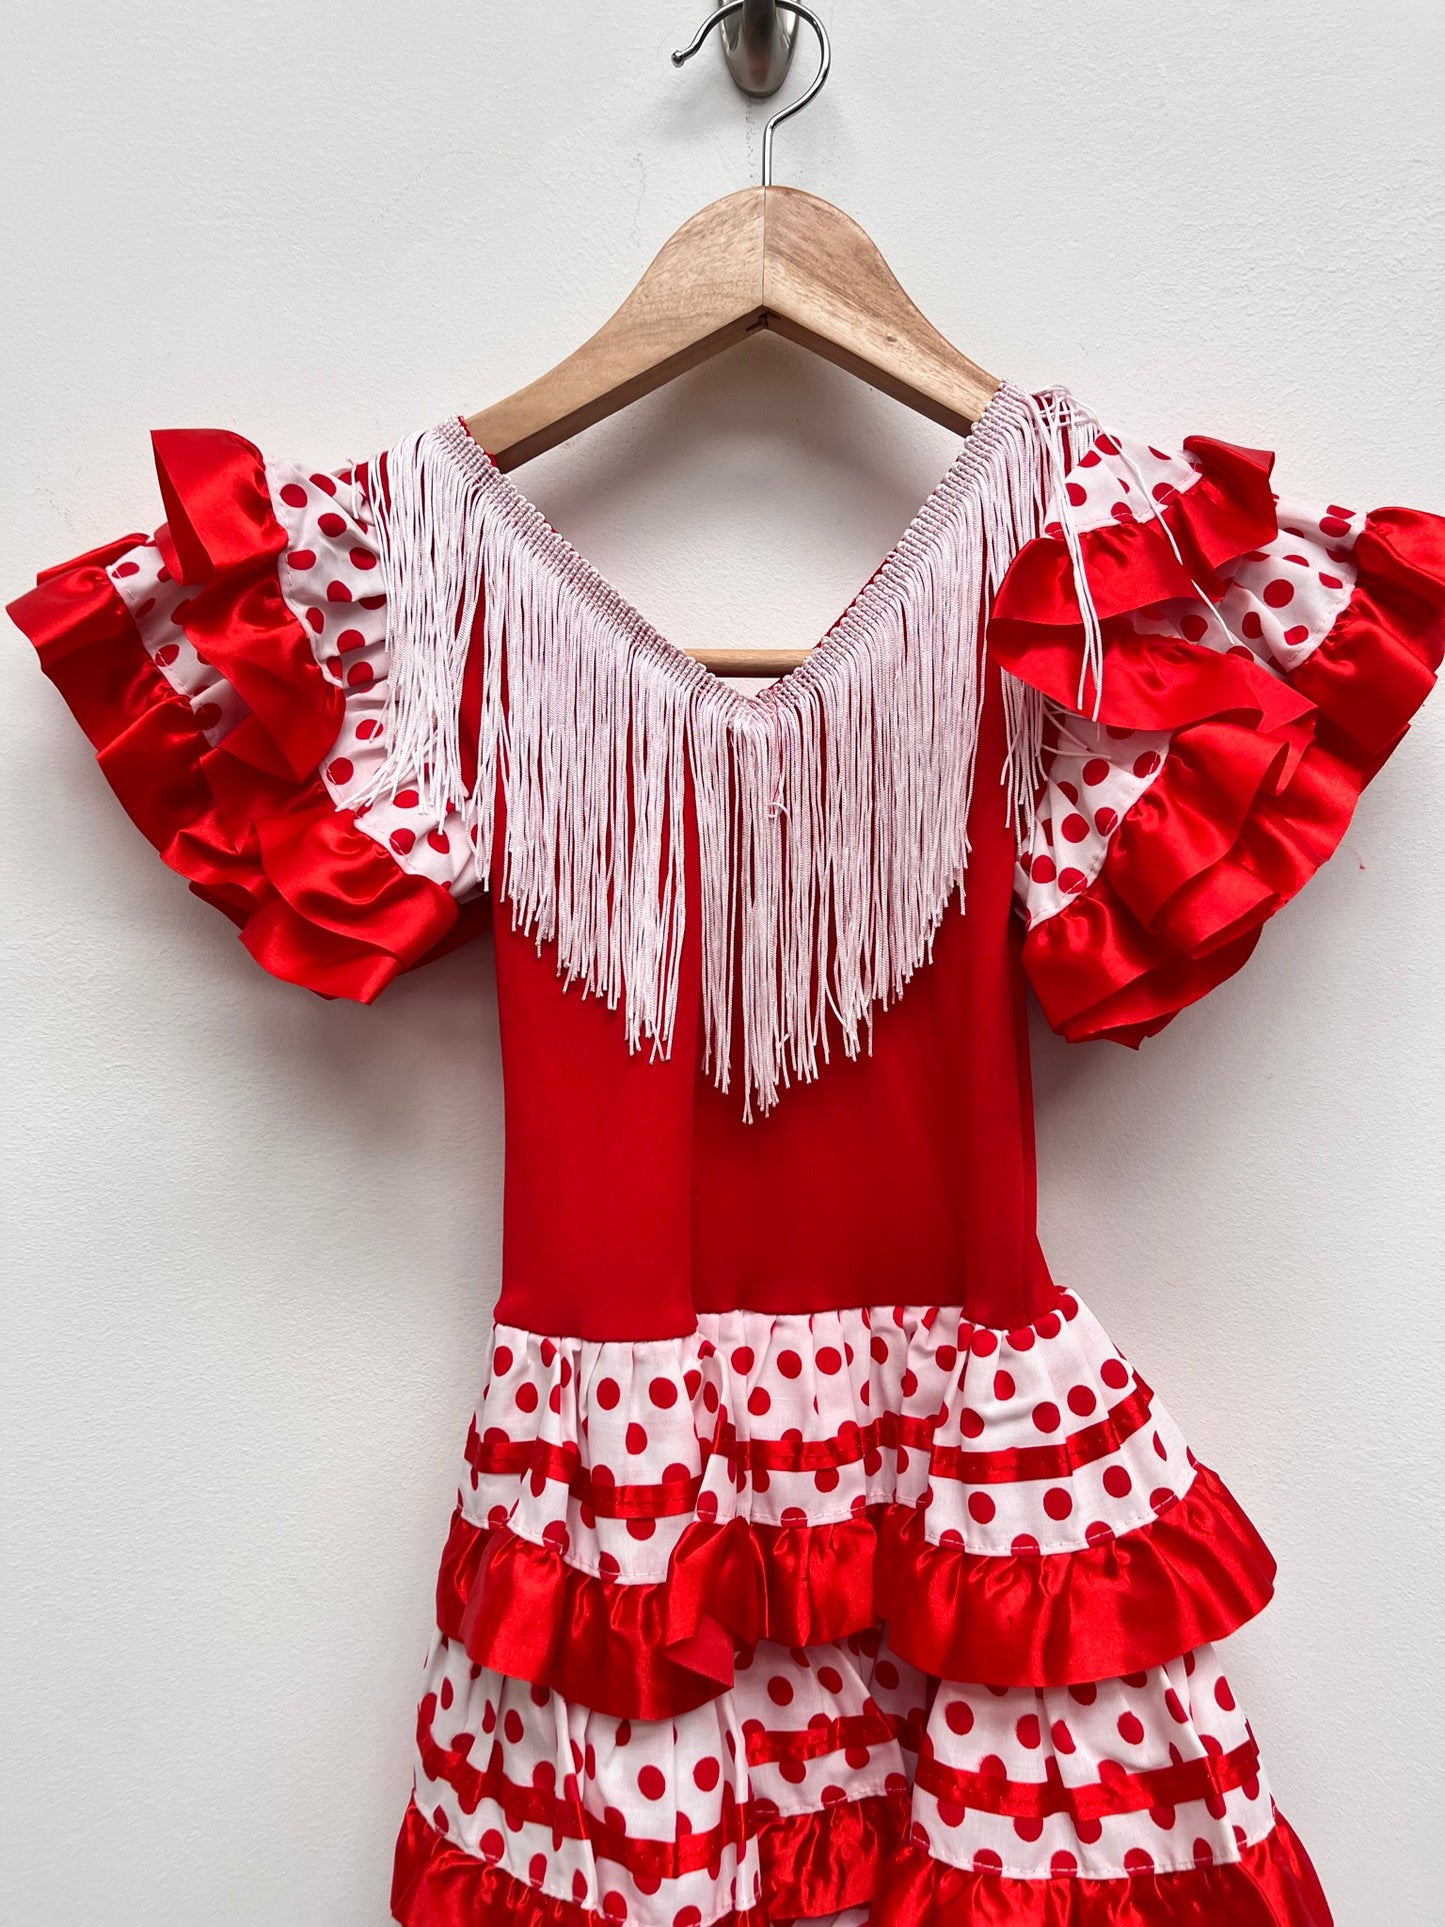 Childs Red and White Spanish Senorita Dress